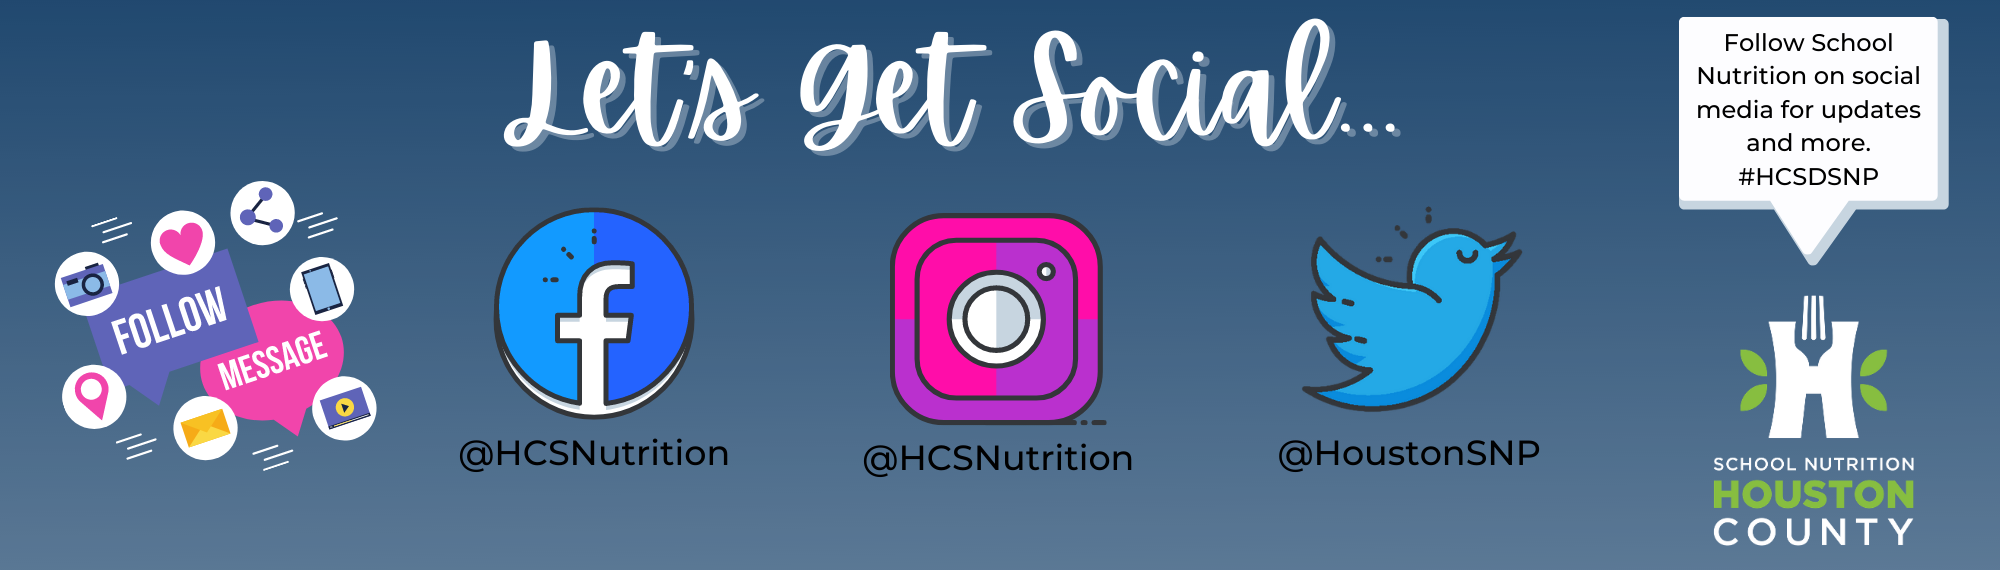 School Nutrition Social Media